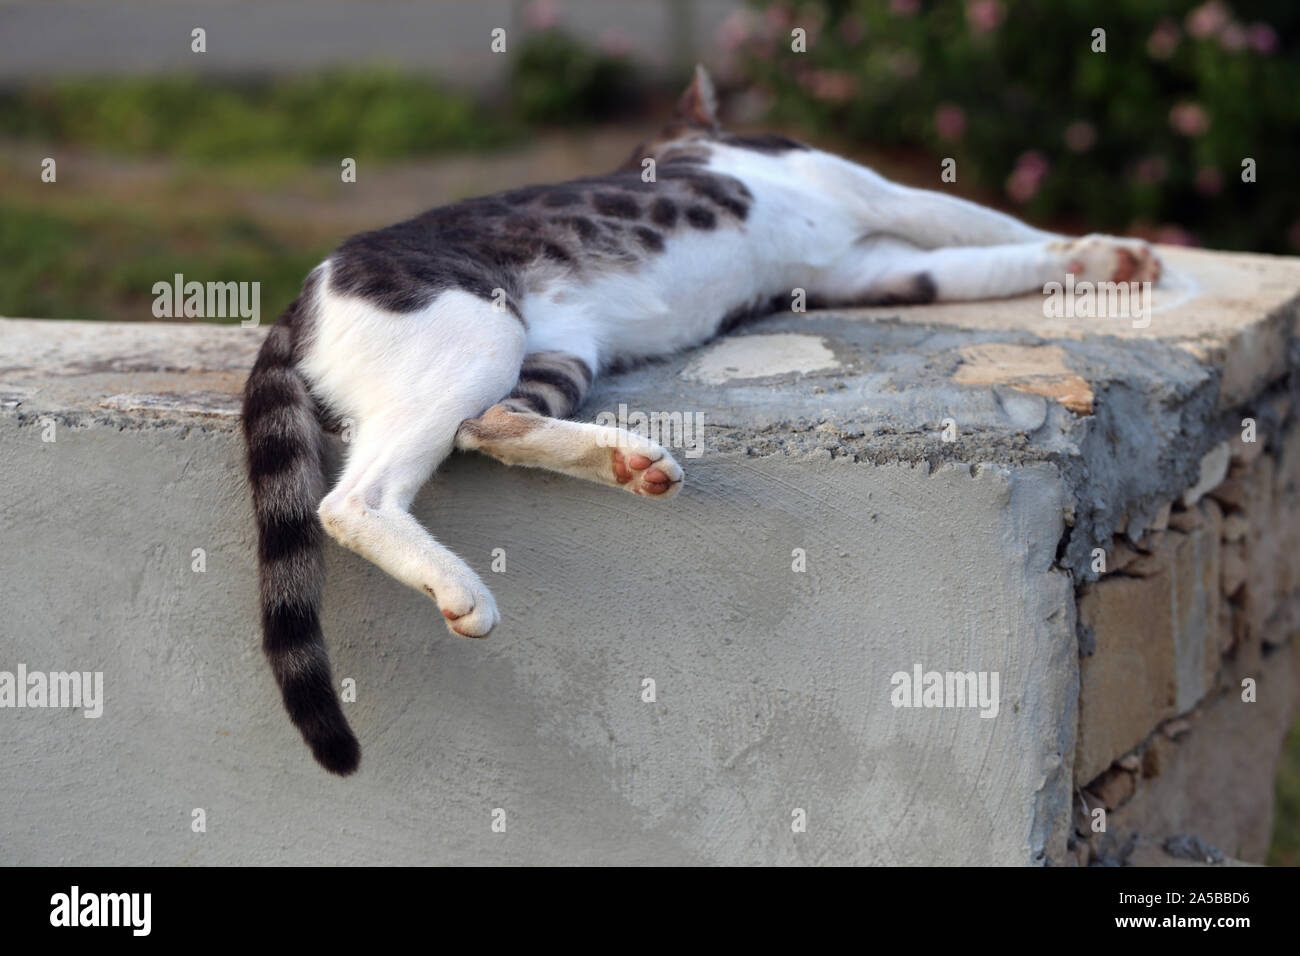 Cute wild cat auf der Insel Zypern fotografiert. Flauschige, pelzigen Tier. Diese Katze hat schöne grau-weiß gestreifte Fell, super weich aussieht. Stockfoto